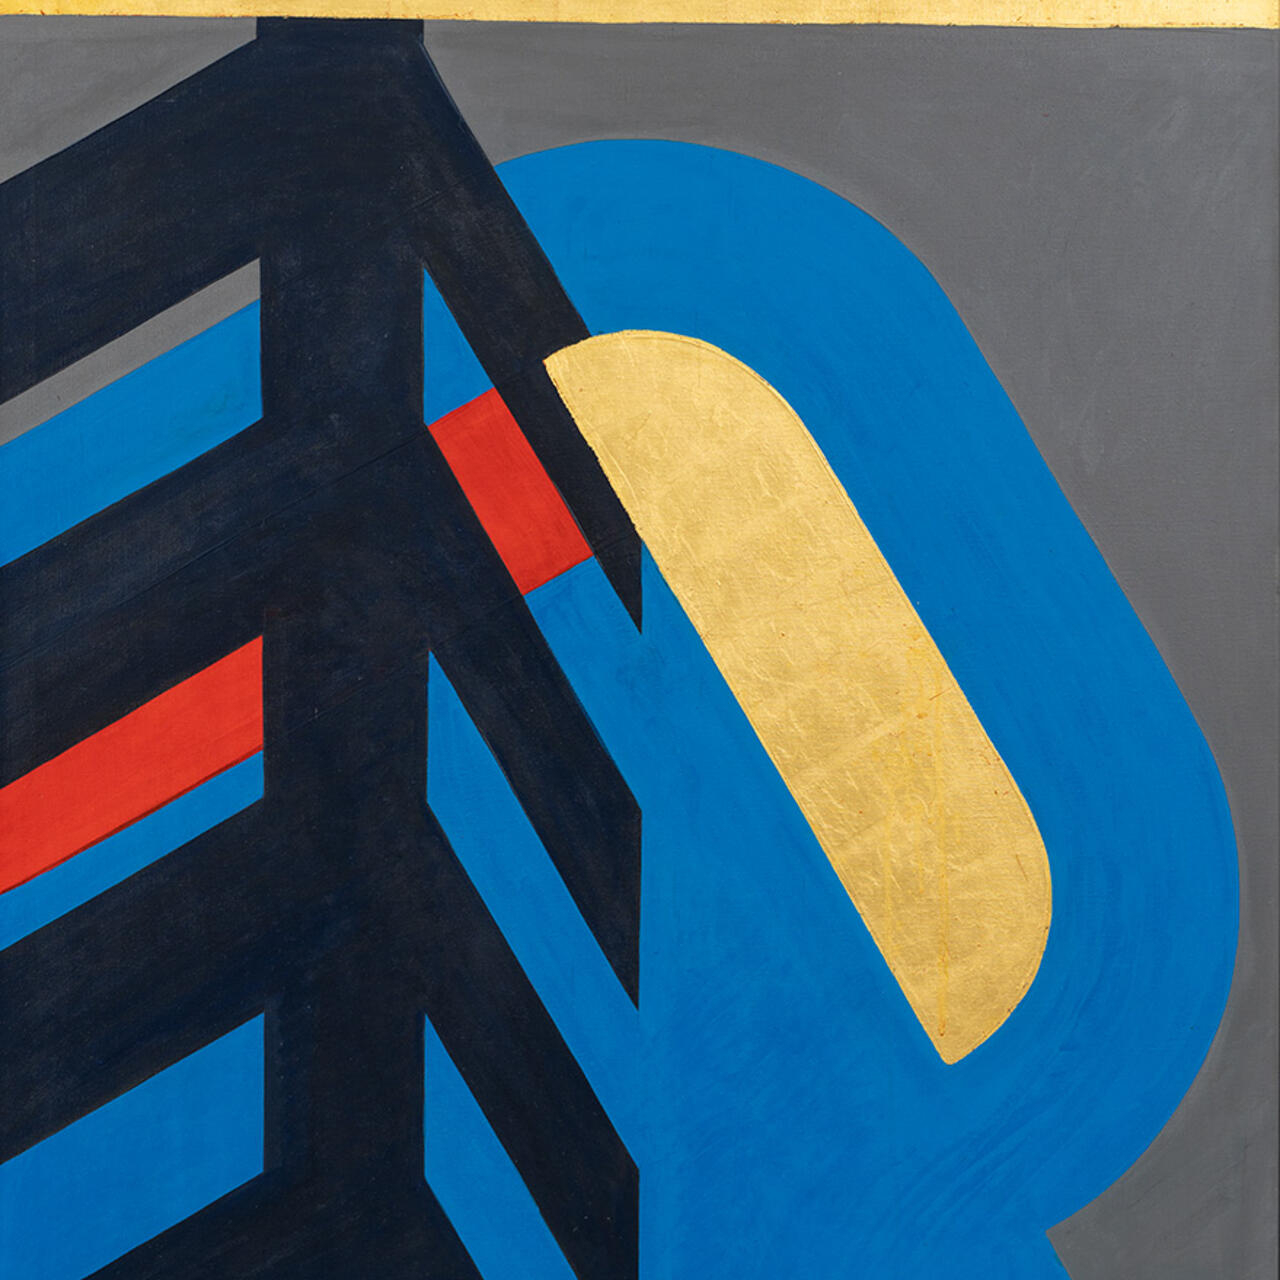 Gemälde mit dem Titel Bild 33 Zeichen am Wege 8 von Otto Herbert Hajek, entstanden 1973–1979